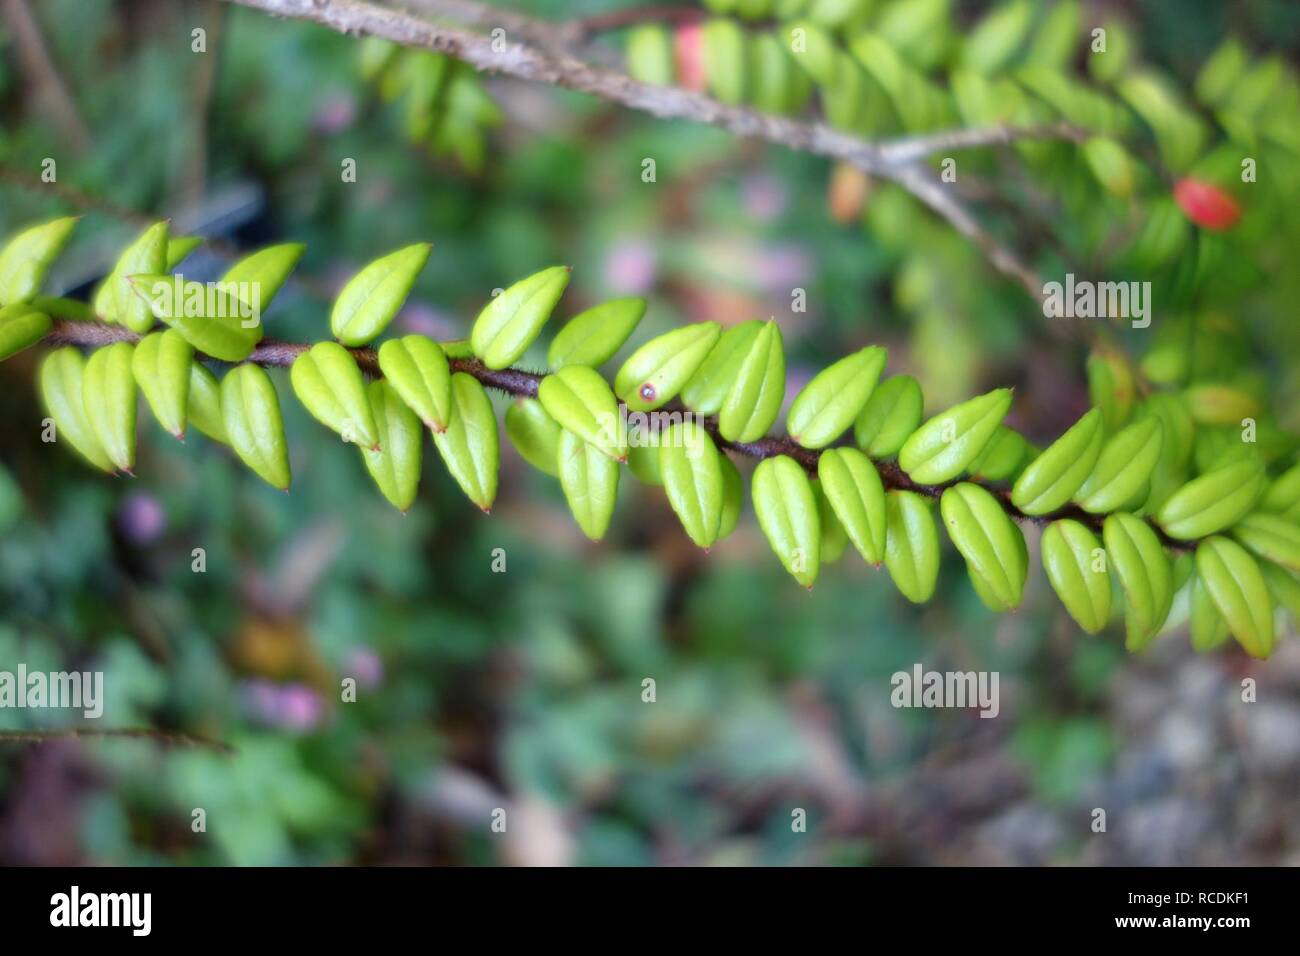 Agapetes serpens - San Francisco Botanical Garden Stock Photo